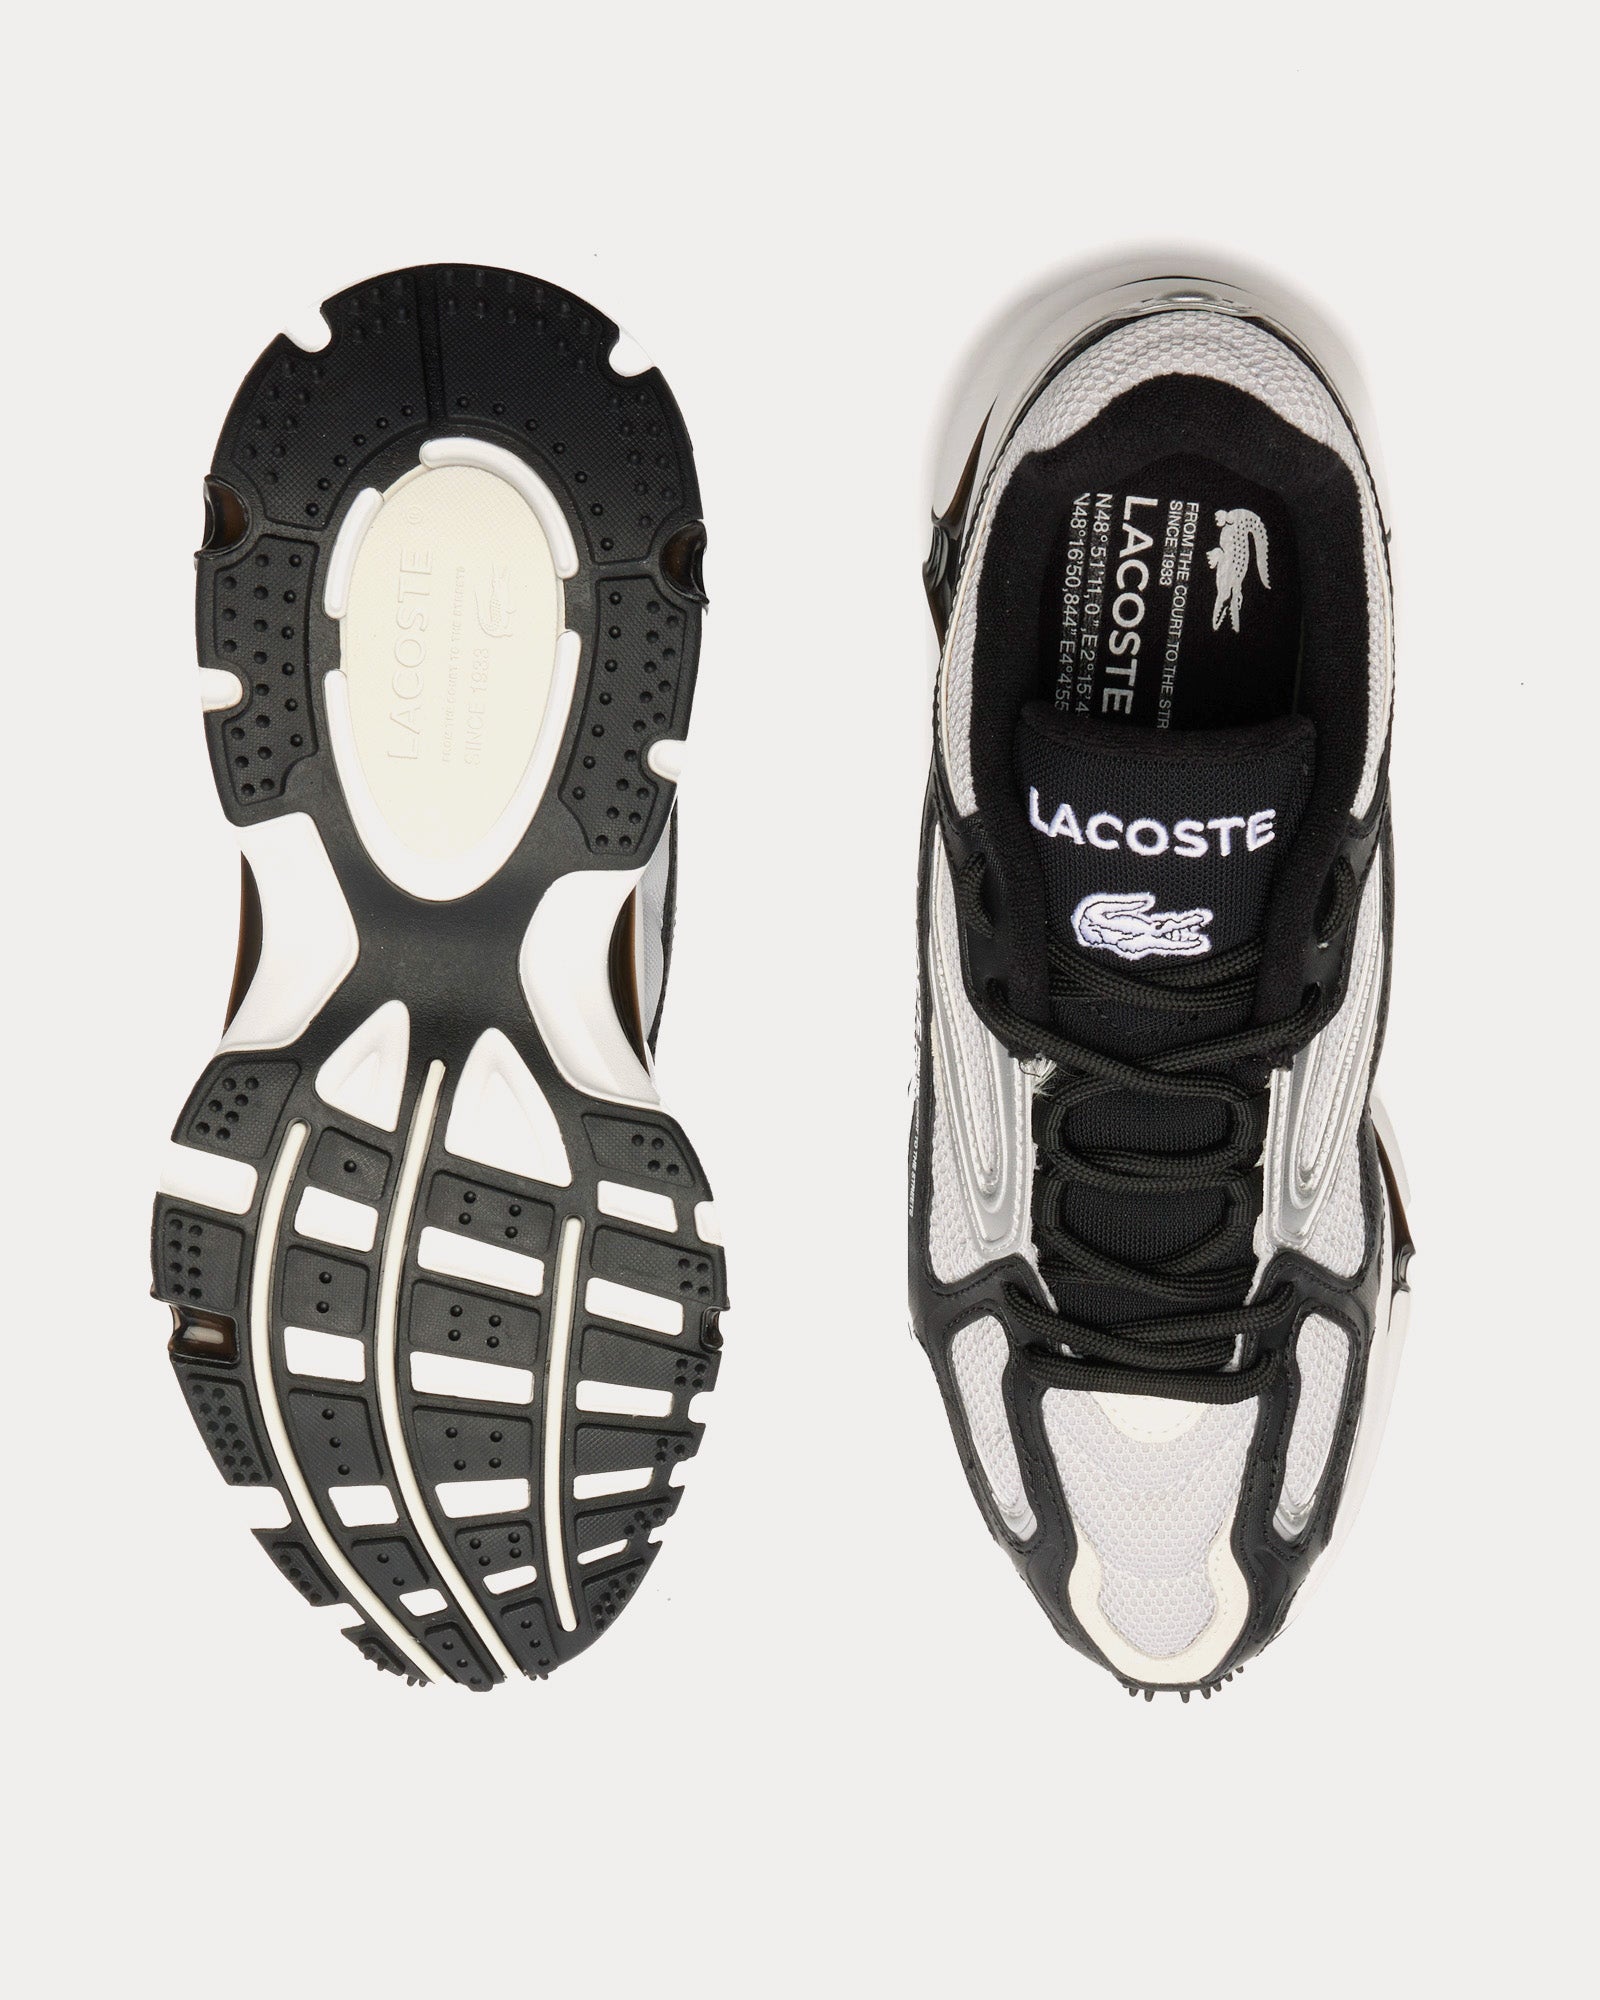 Lacoste - L003 2K24 Black / Grey / Silver Low Top Sneakers